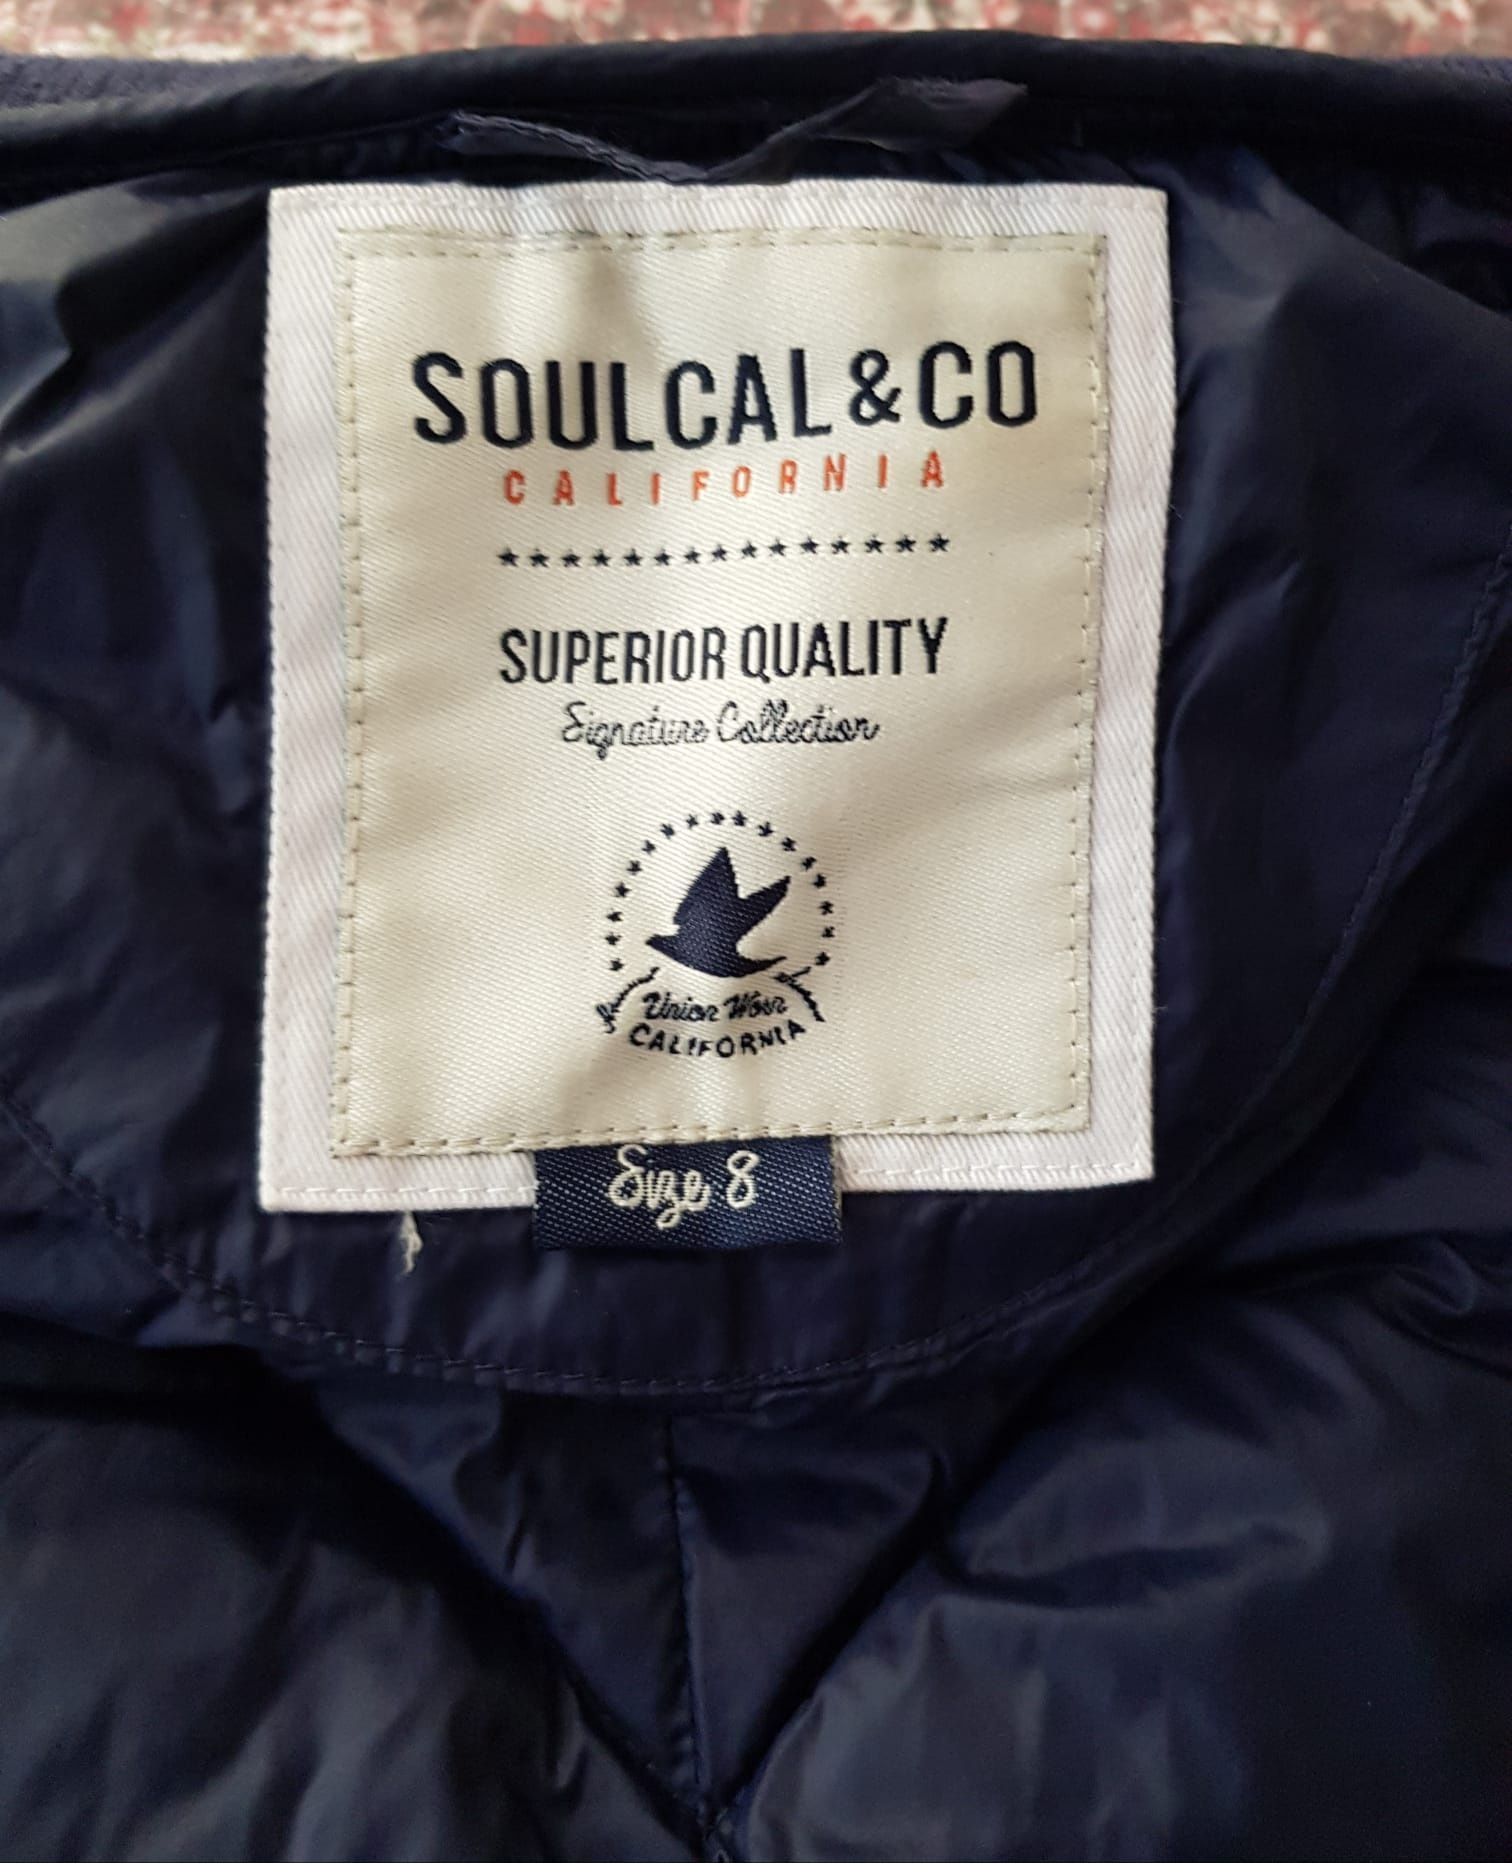 Vestă damă, matlasată, Soulcal&Co, calitate superioară, m.8(U.K.)-36/S